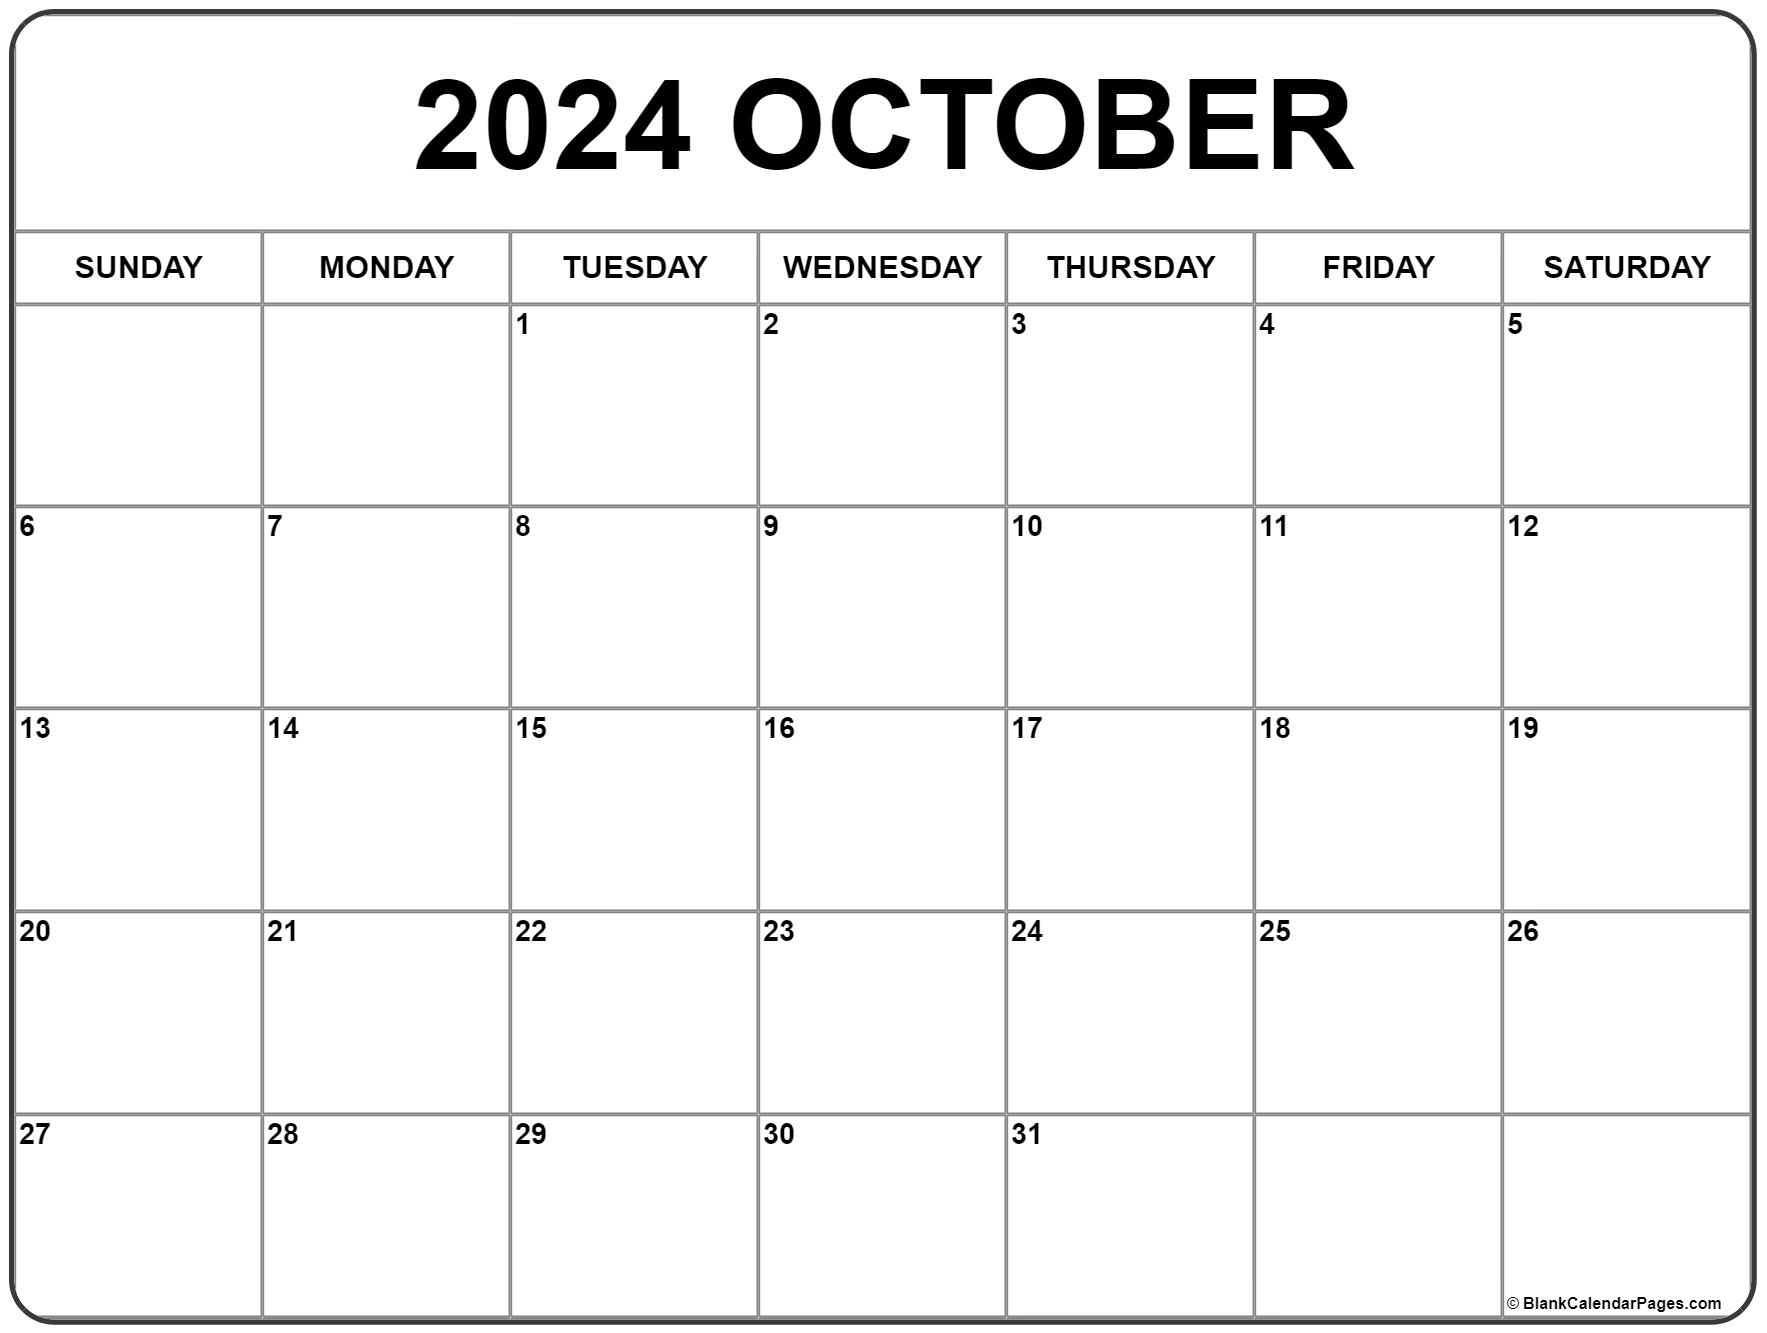 October 2020 calendar | free printable calendar